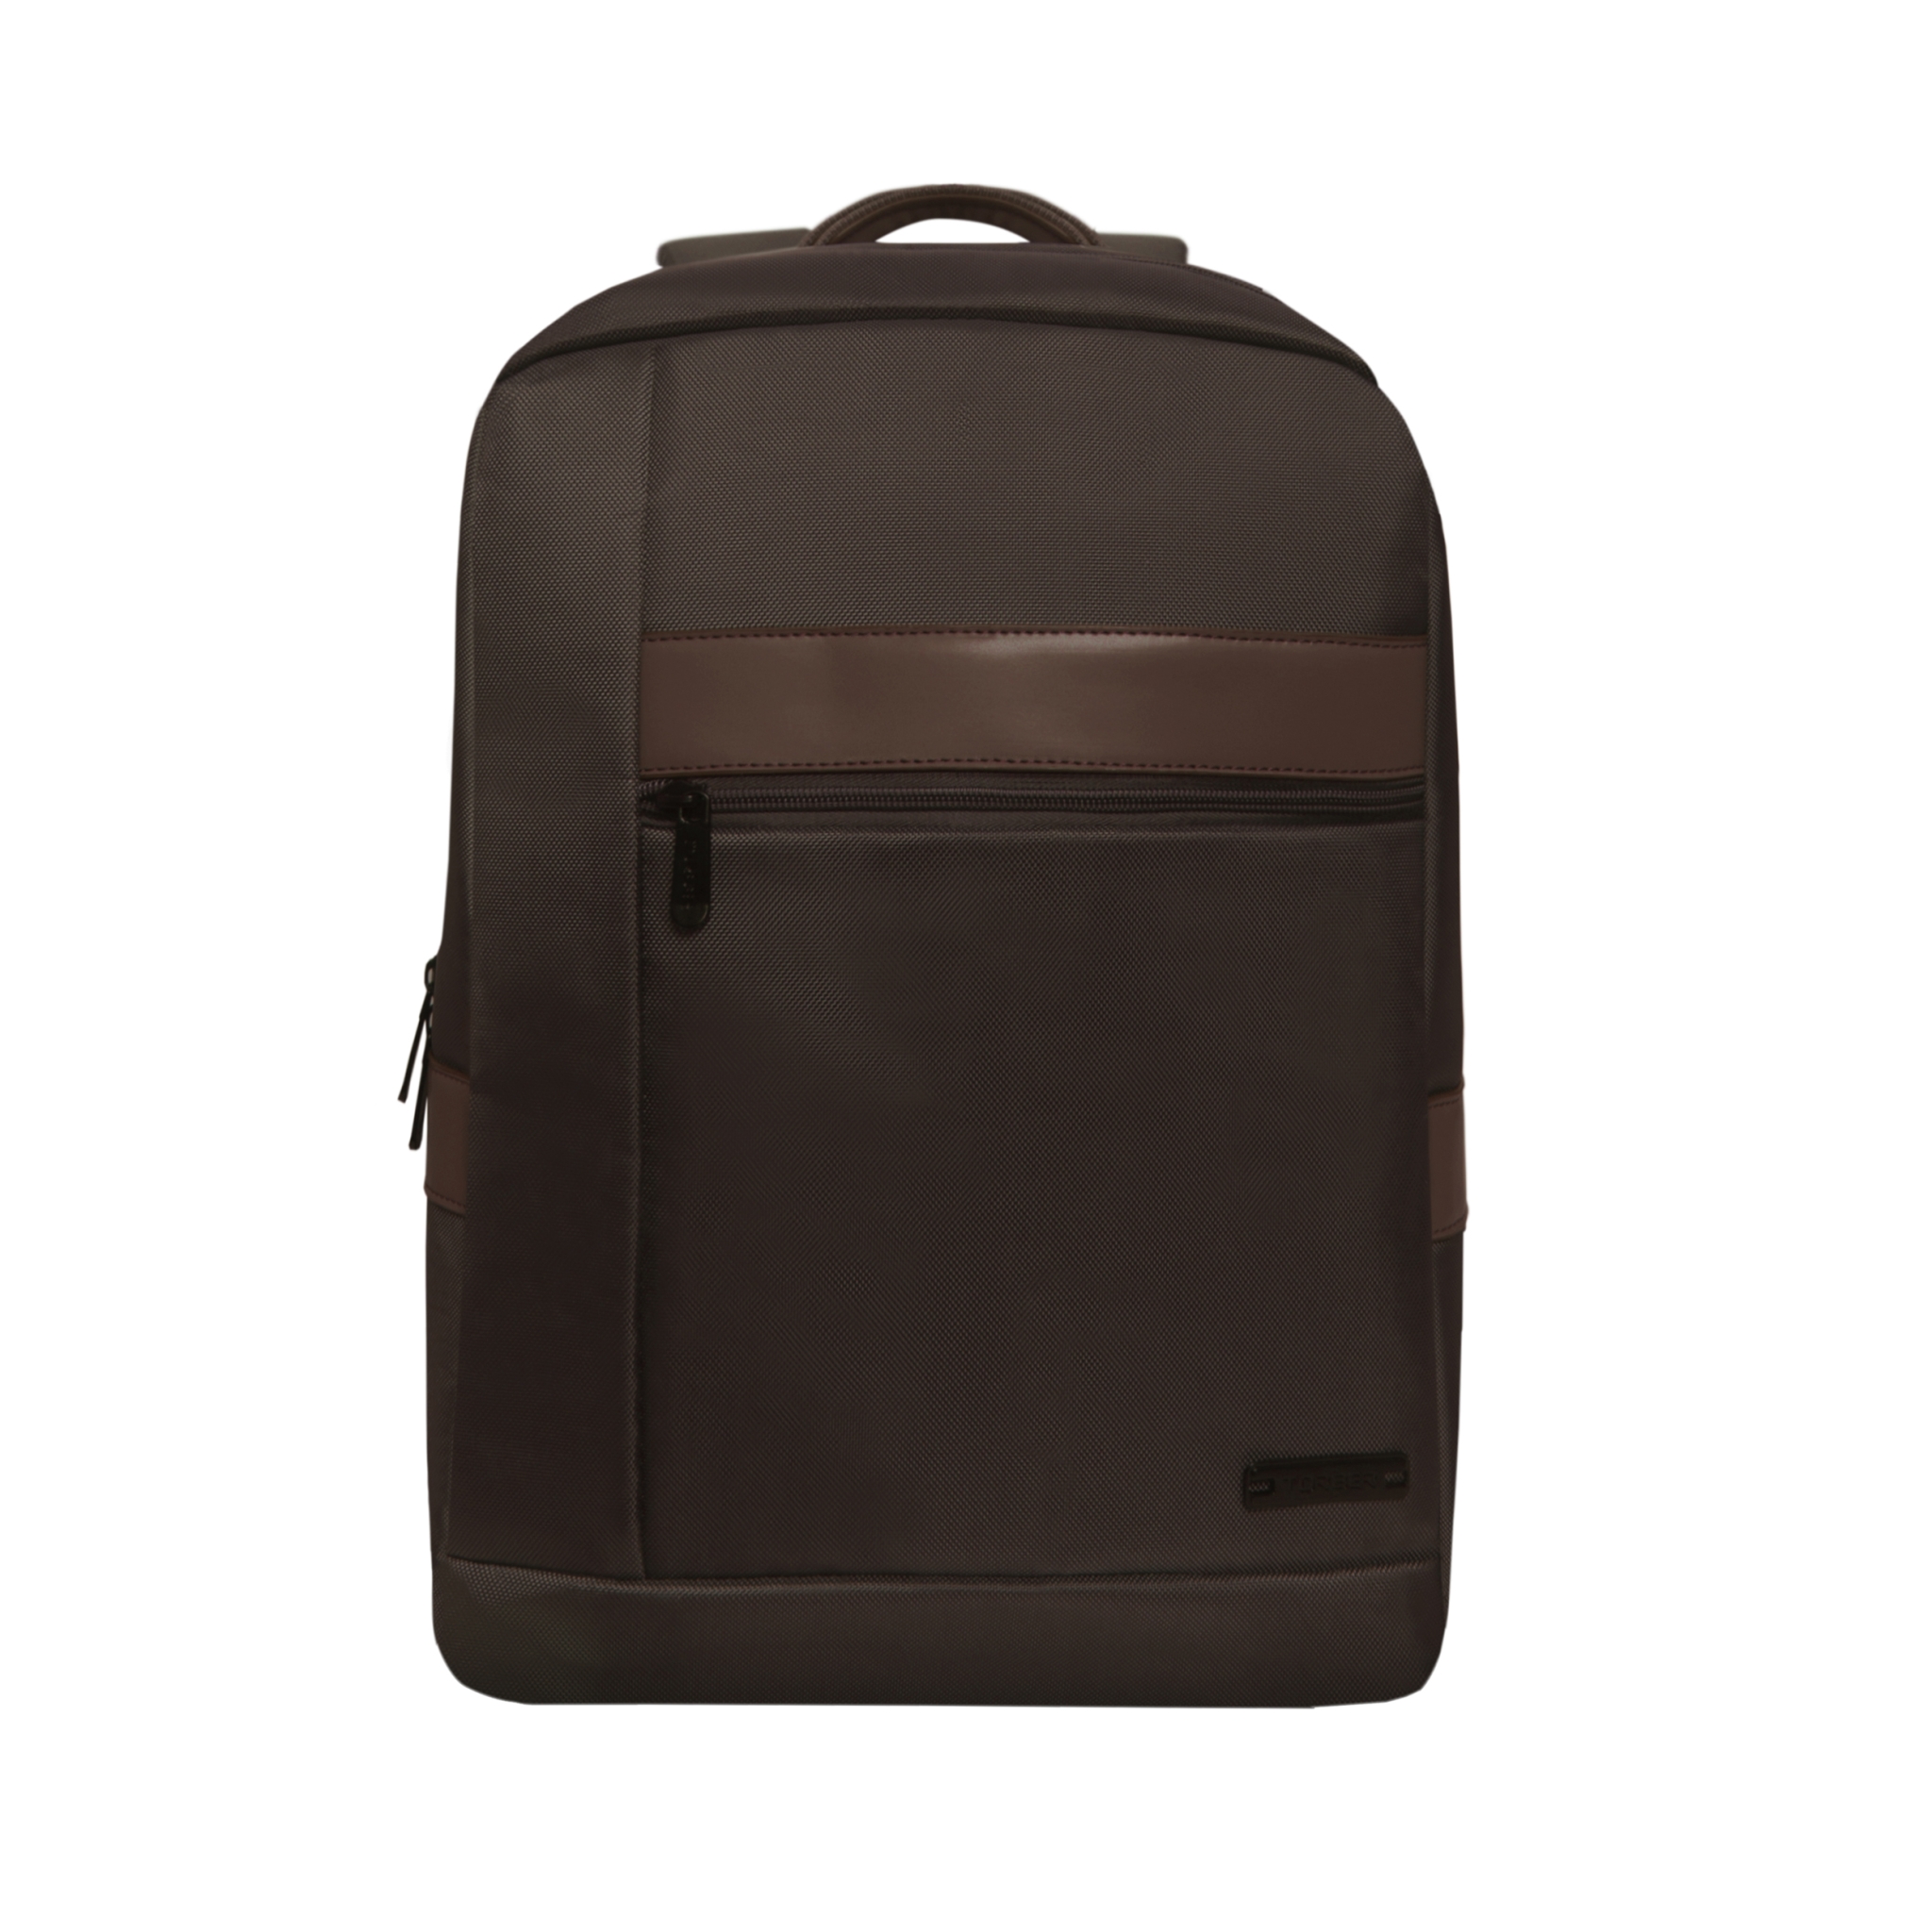 Рюкзак TORBER VECTOR с отделением для ноутбука 15,6", коричневый, полиэстер 840D, 44 х 30 x 9,5 см, коричневый